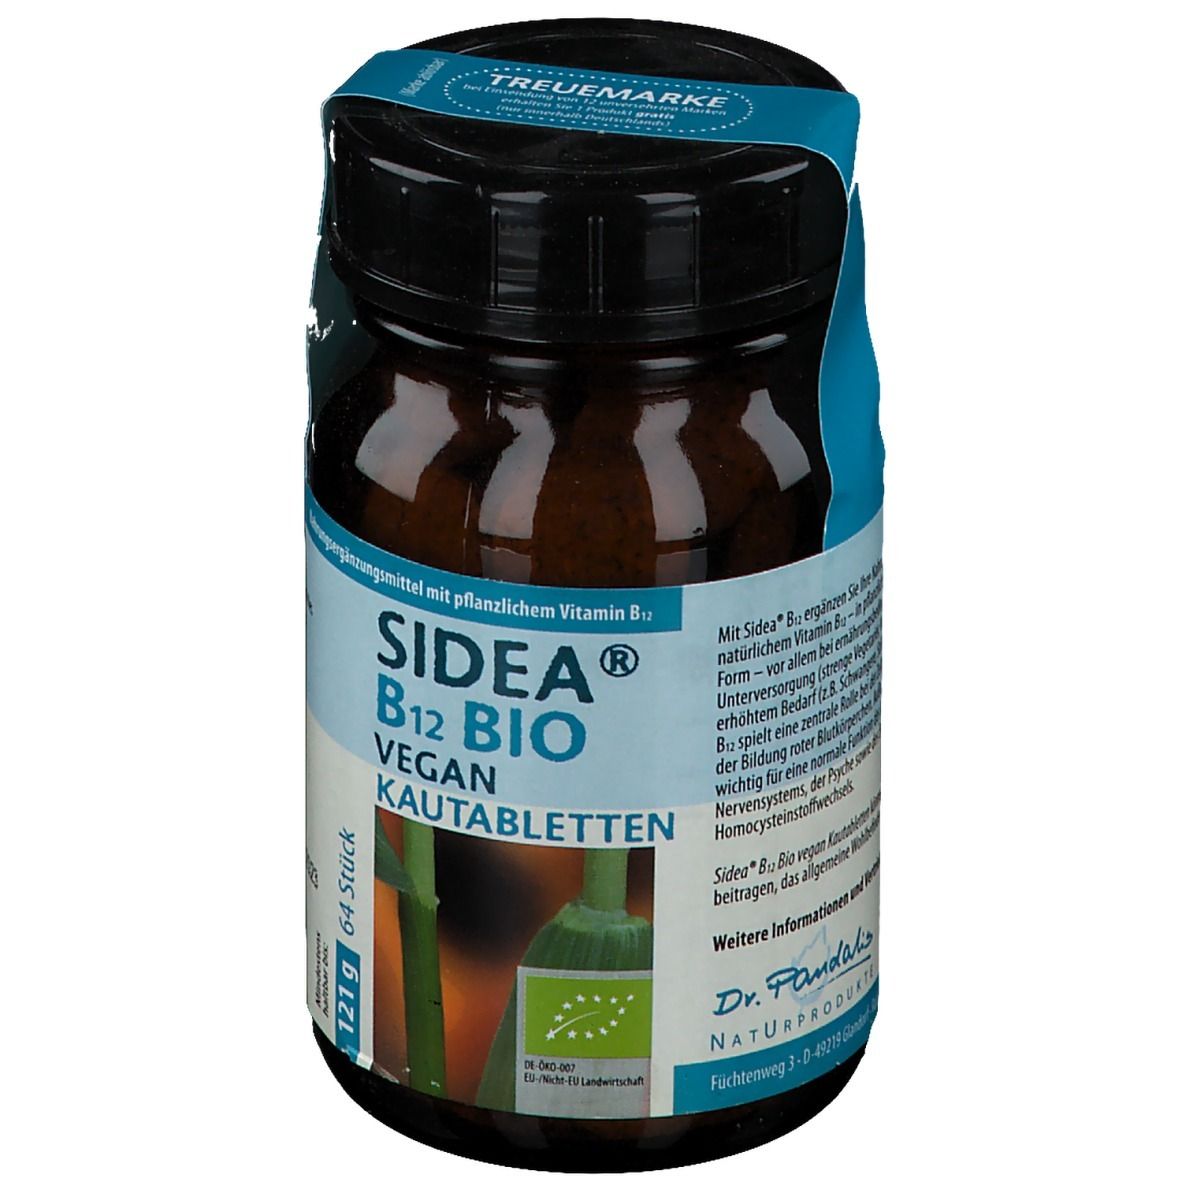 Sidea® B12 Bio vegan